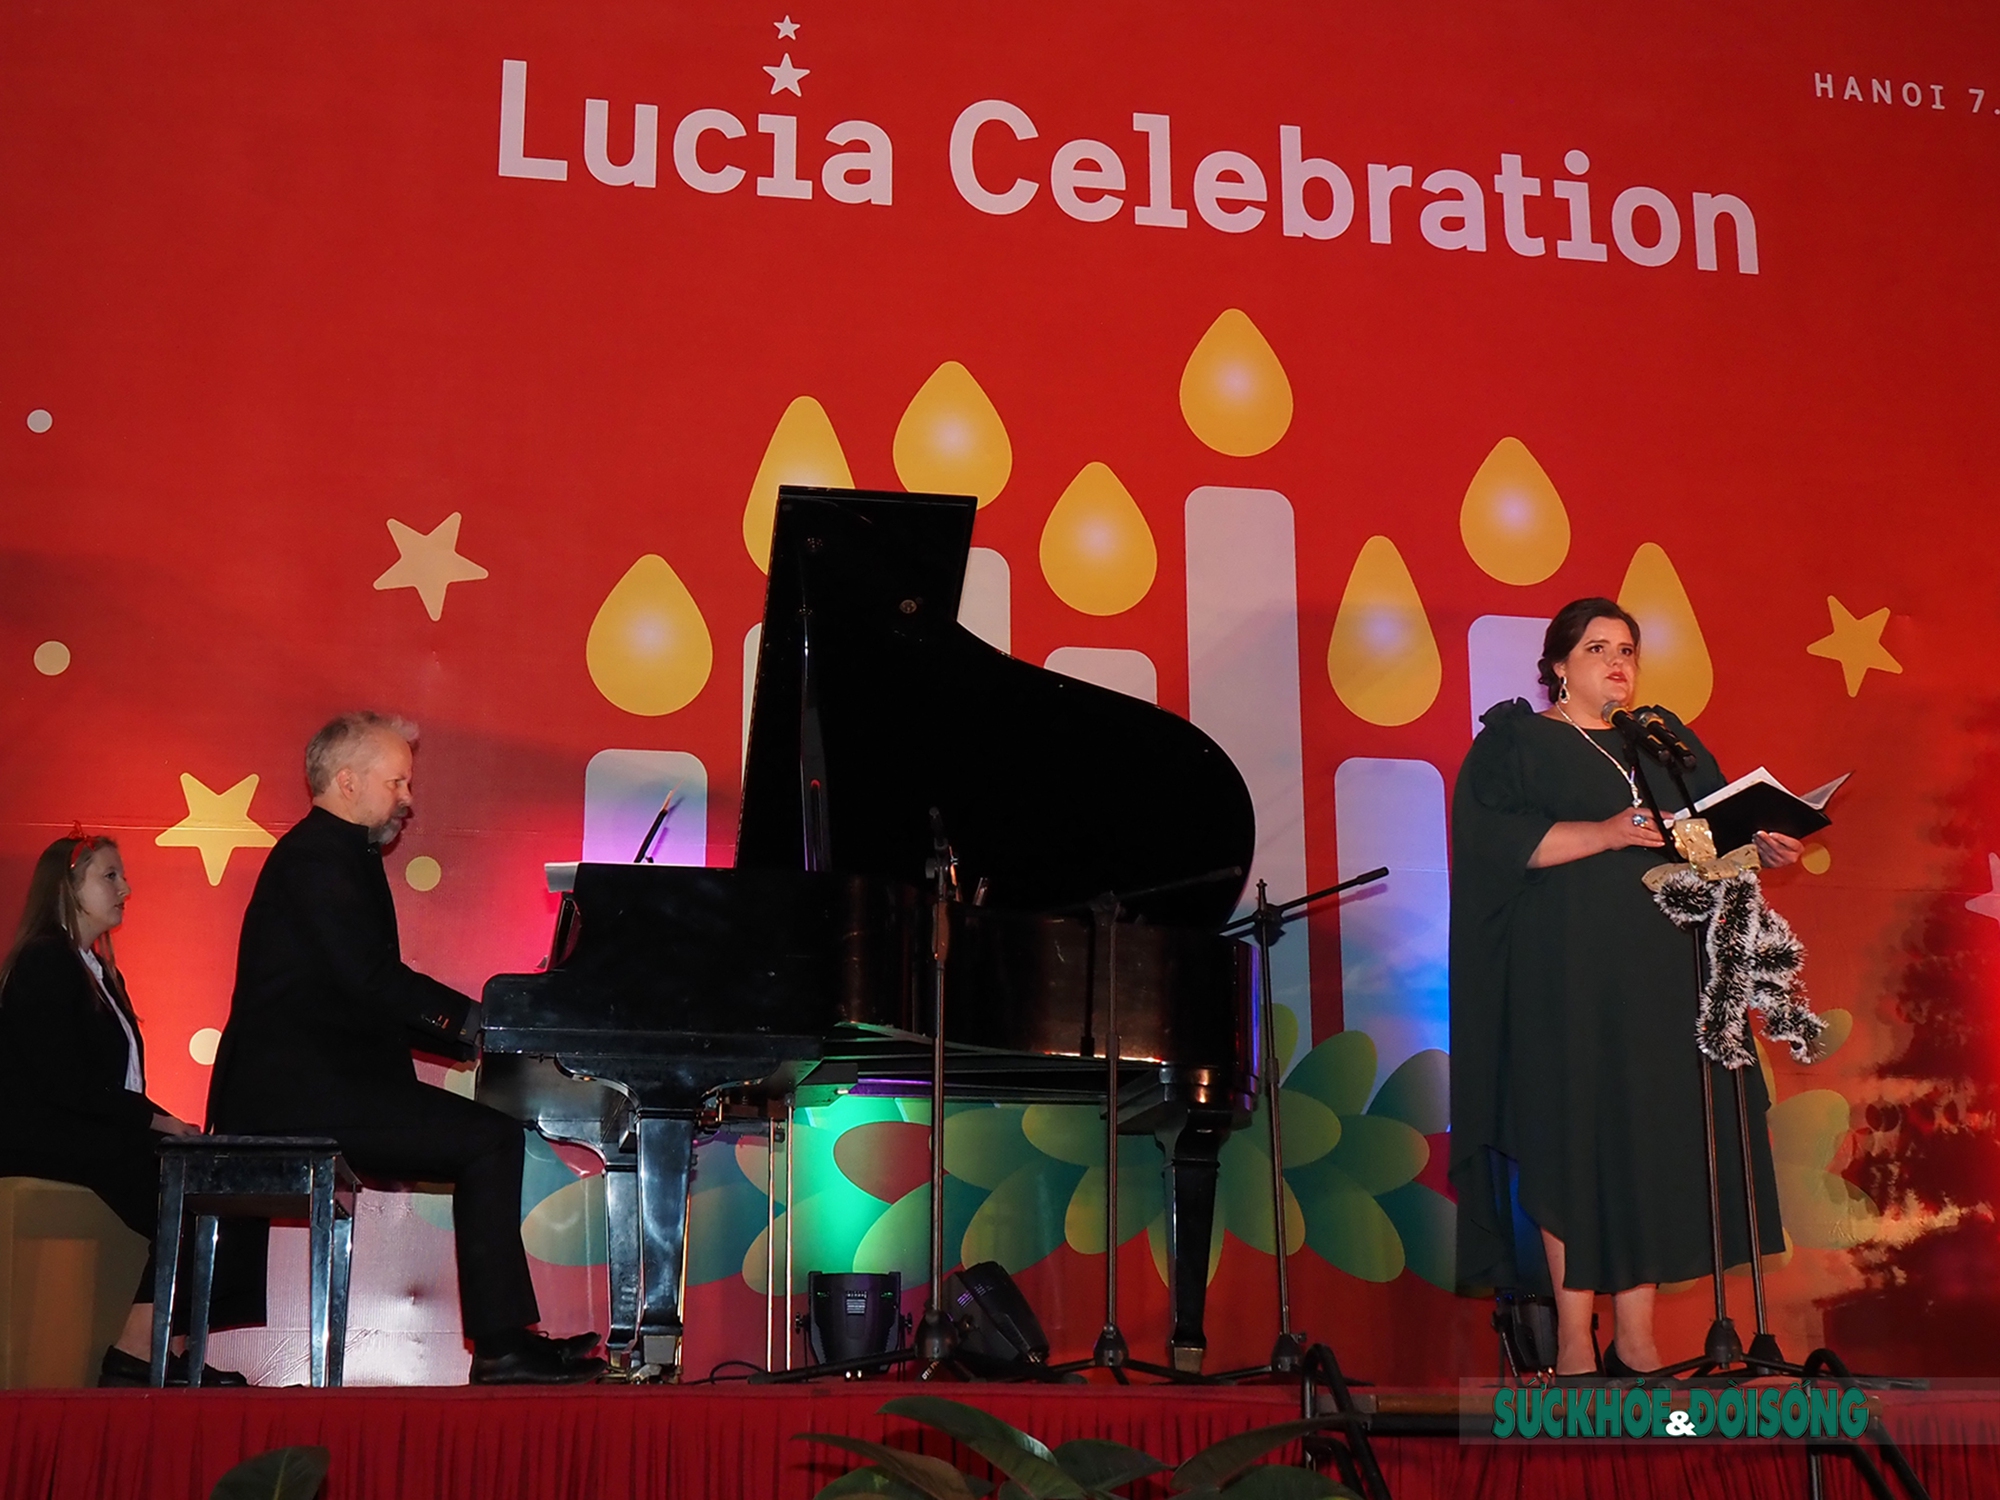 Đặc sắc lễ hội Lucia của Thụy Điển giữa lòng Thủ đô - Ảnh 7.